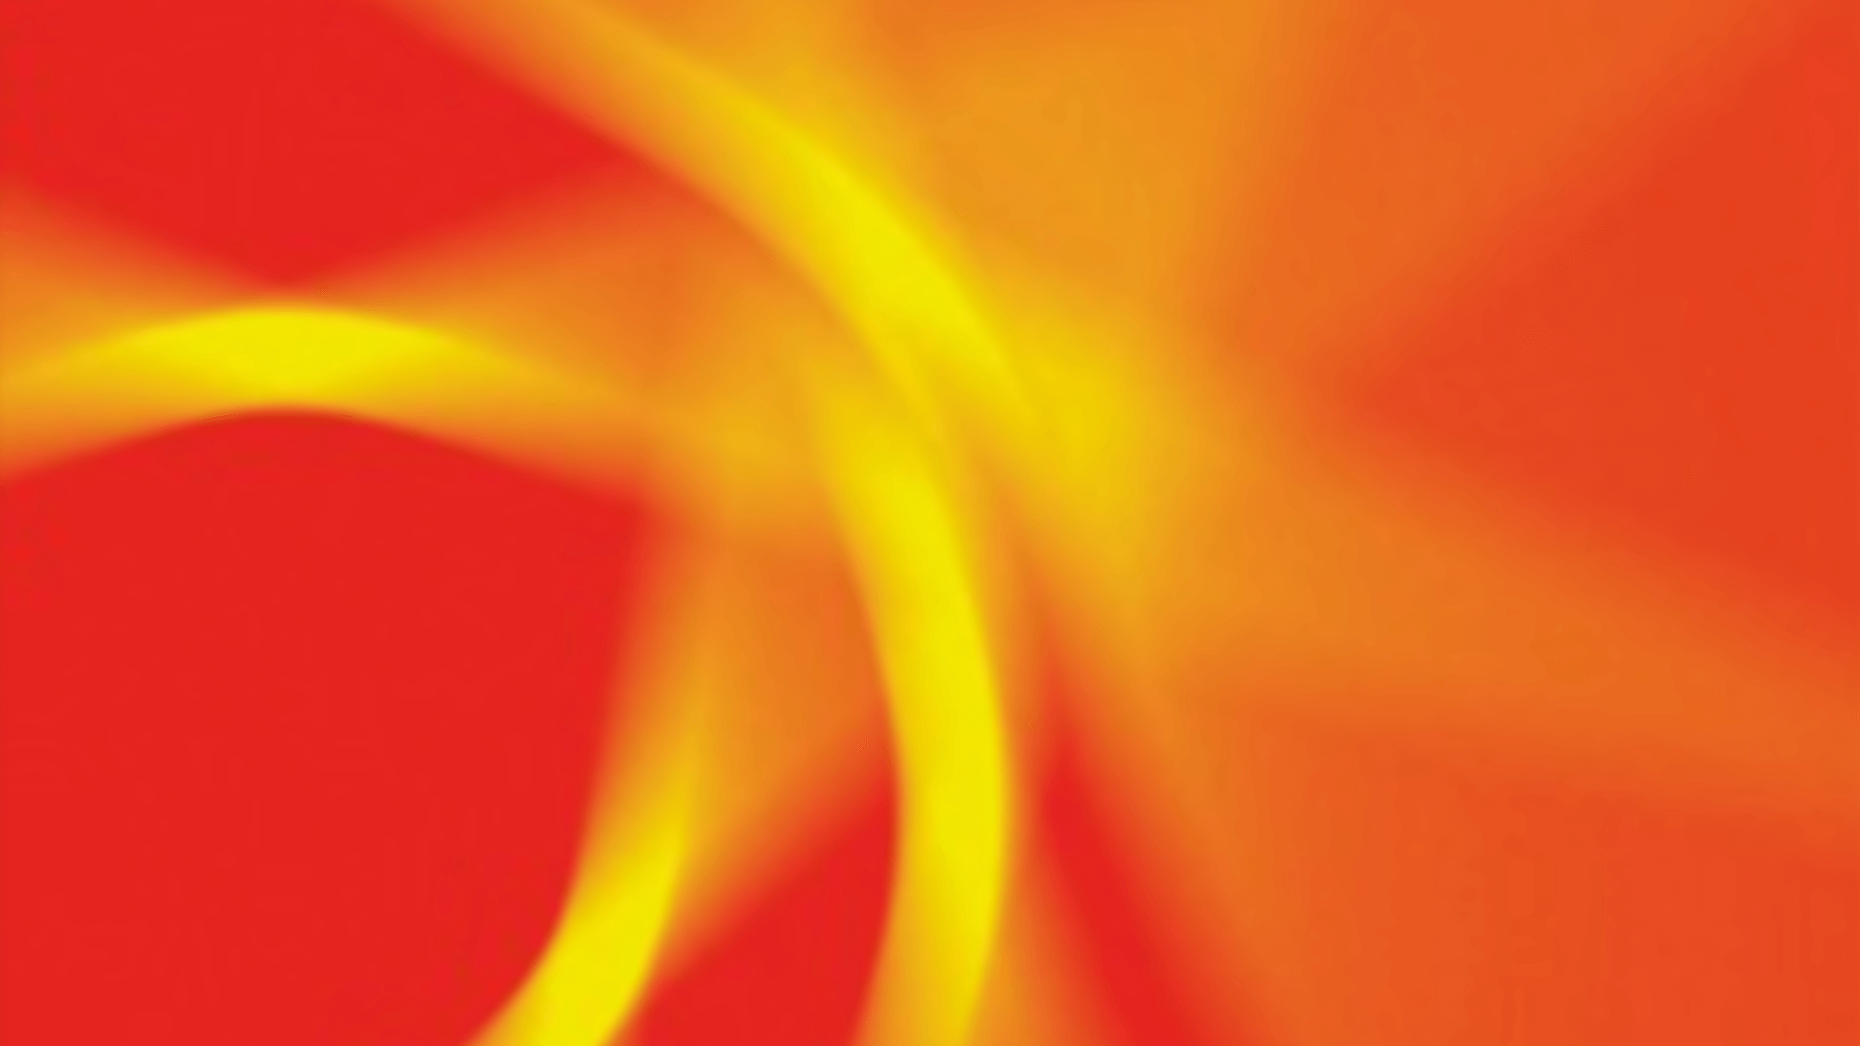 Abstraktes Bild mit verschwommenen gelben Streifen auf rotem Hintergrund